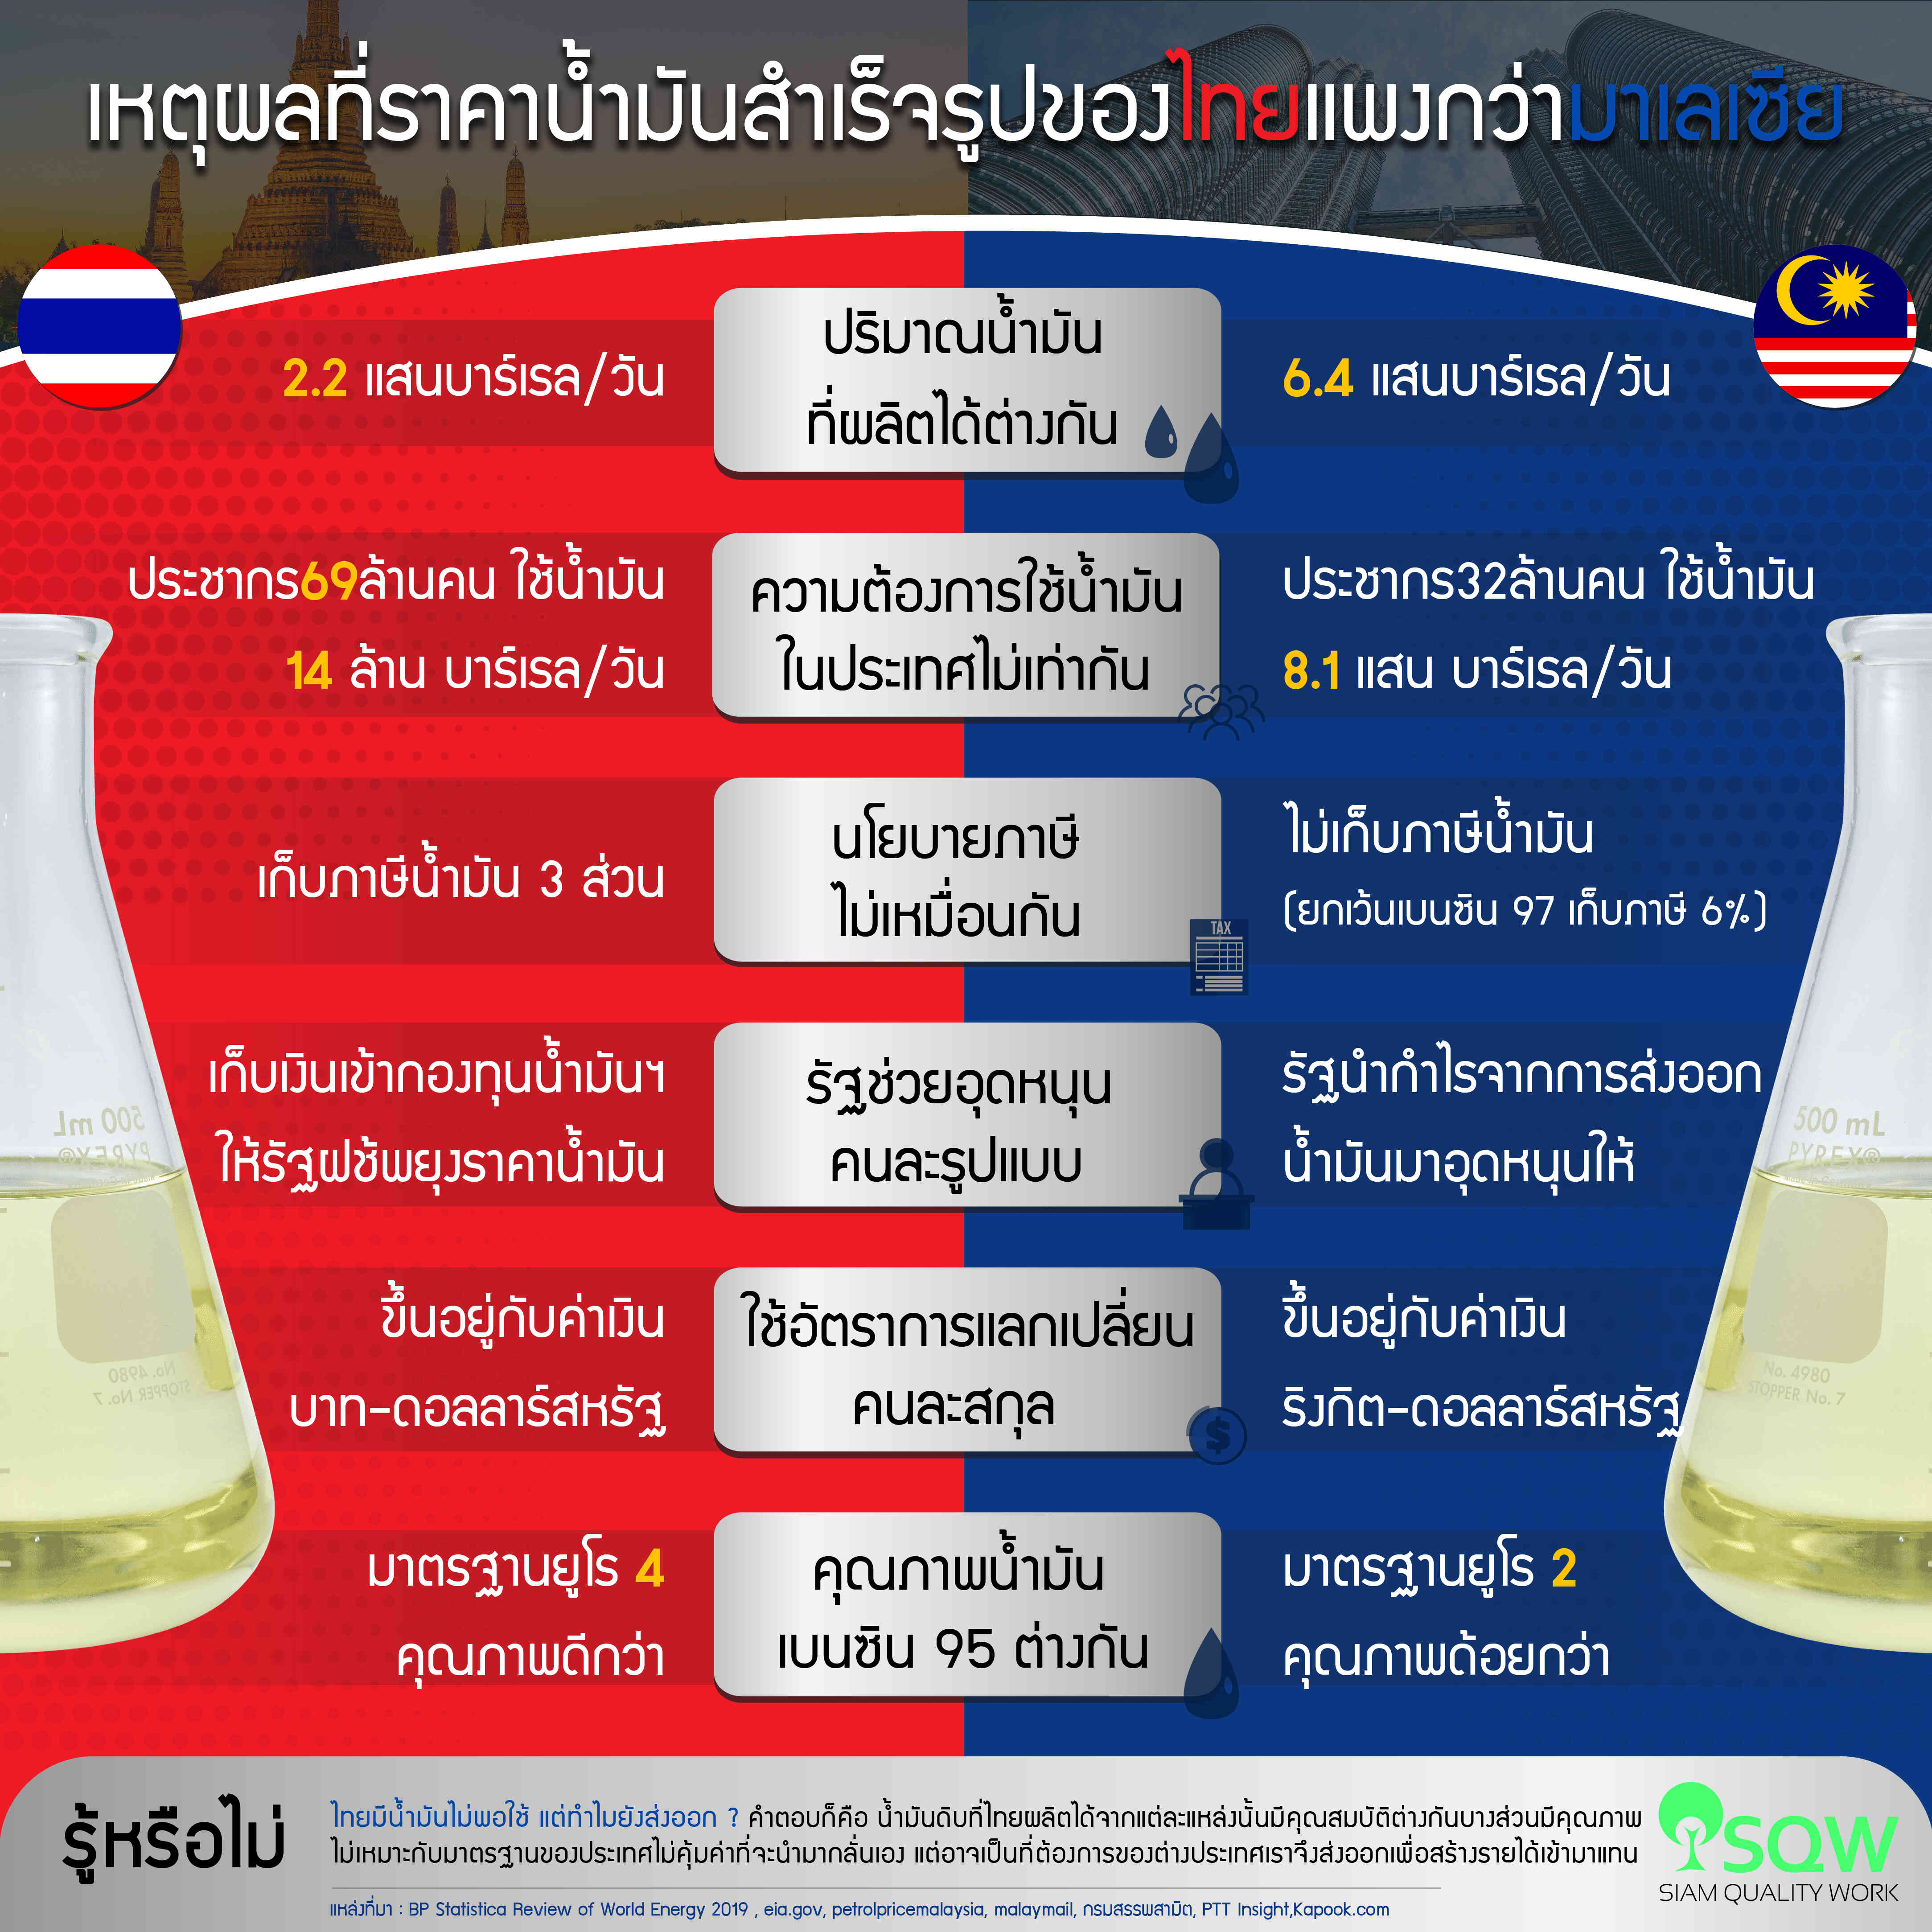 ทำไมราคาน้ำมันสำเร็จรูปของไทยแพงกว่ามาเลเซีย